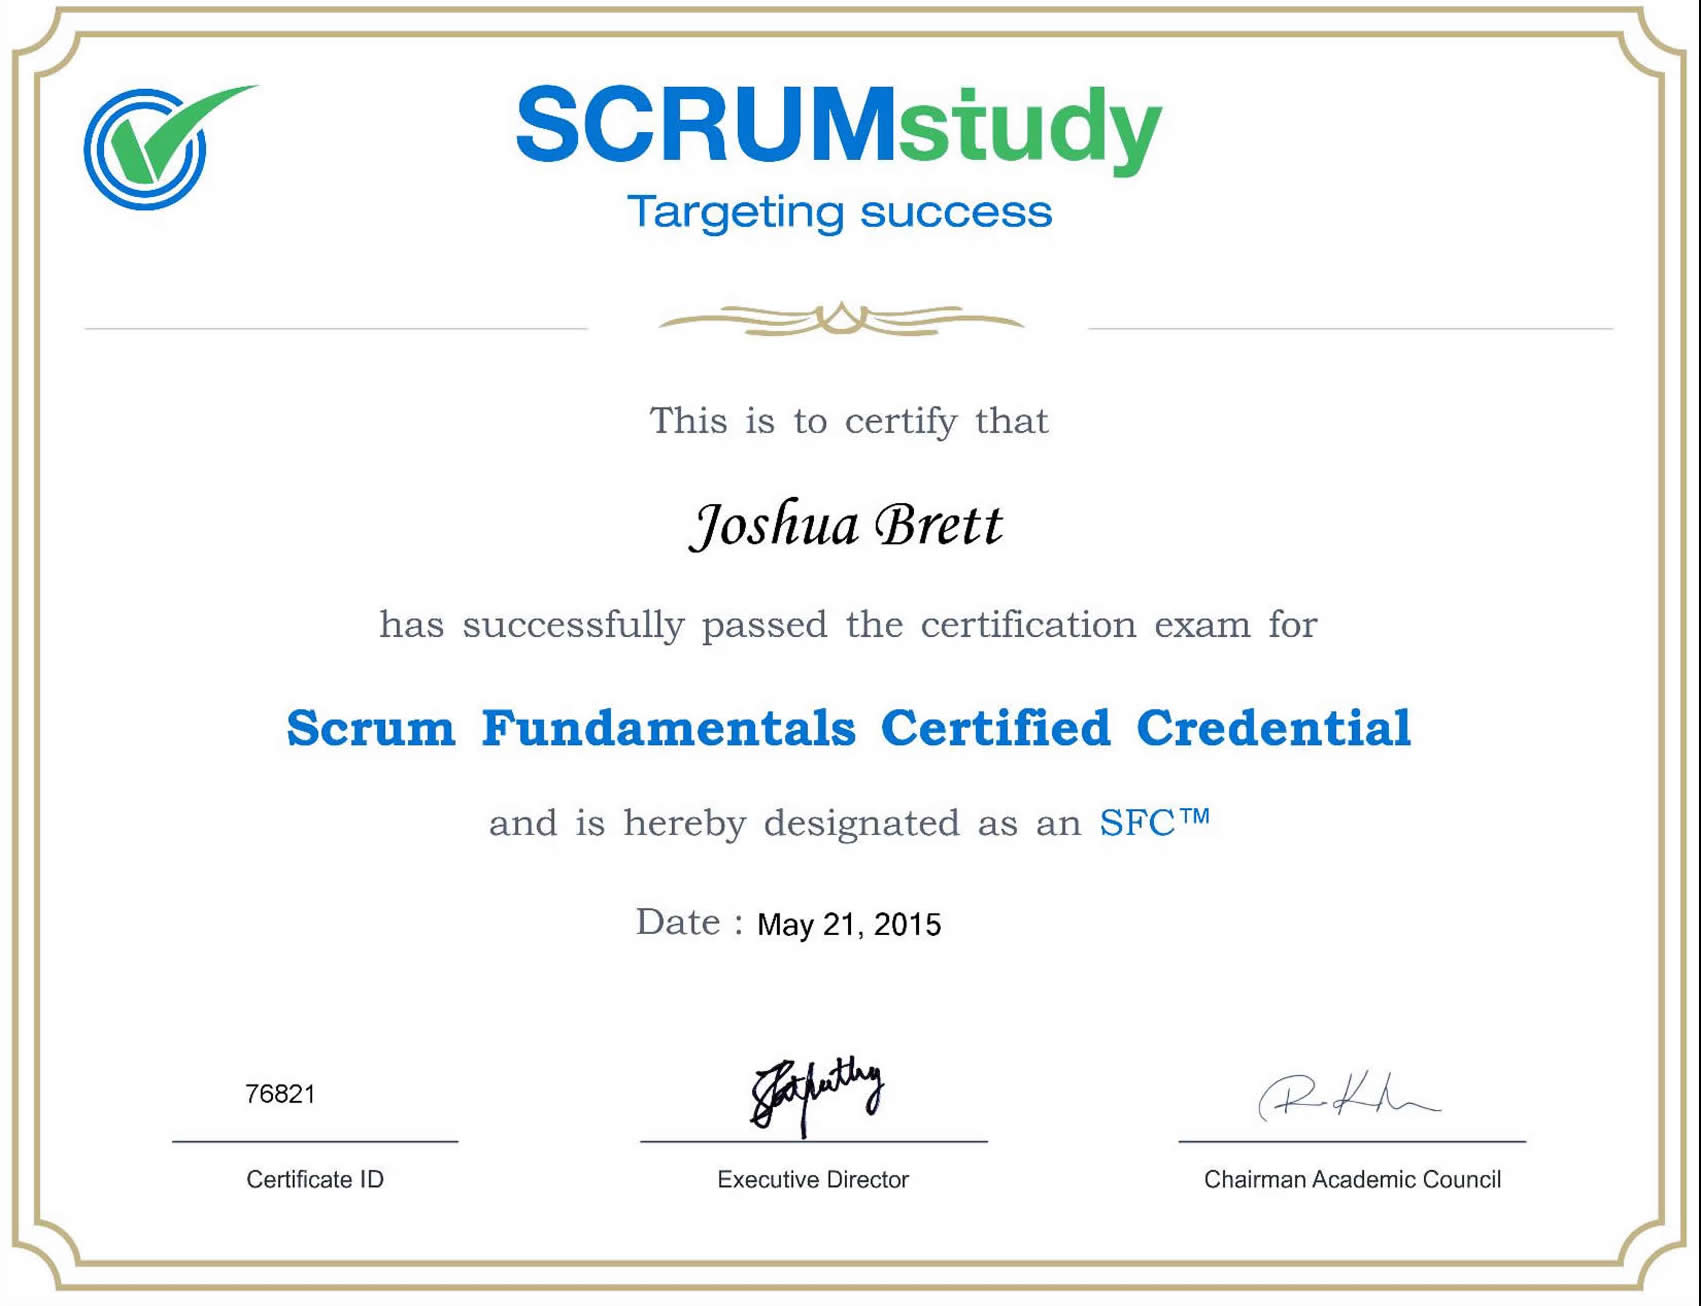 Scrum Fundamentals Certified Credential